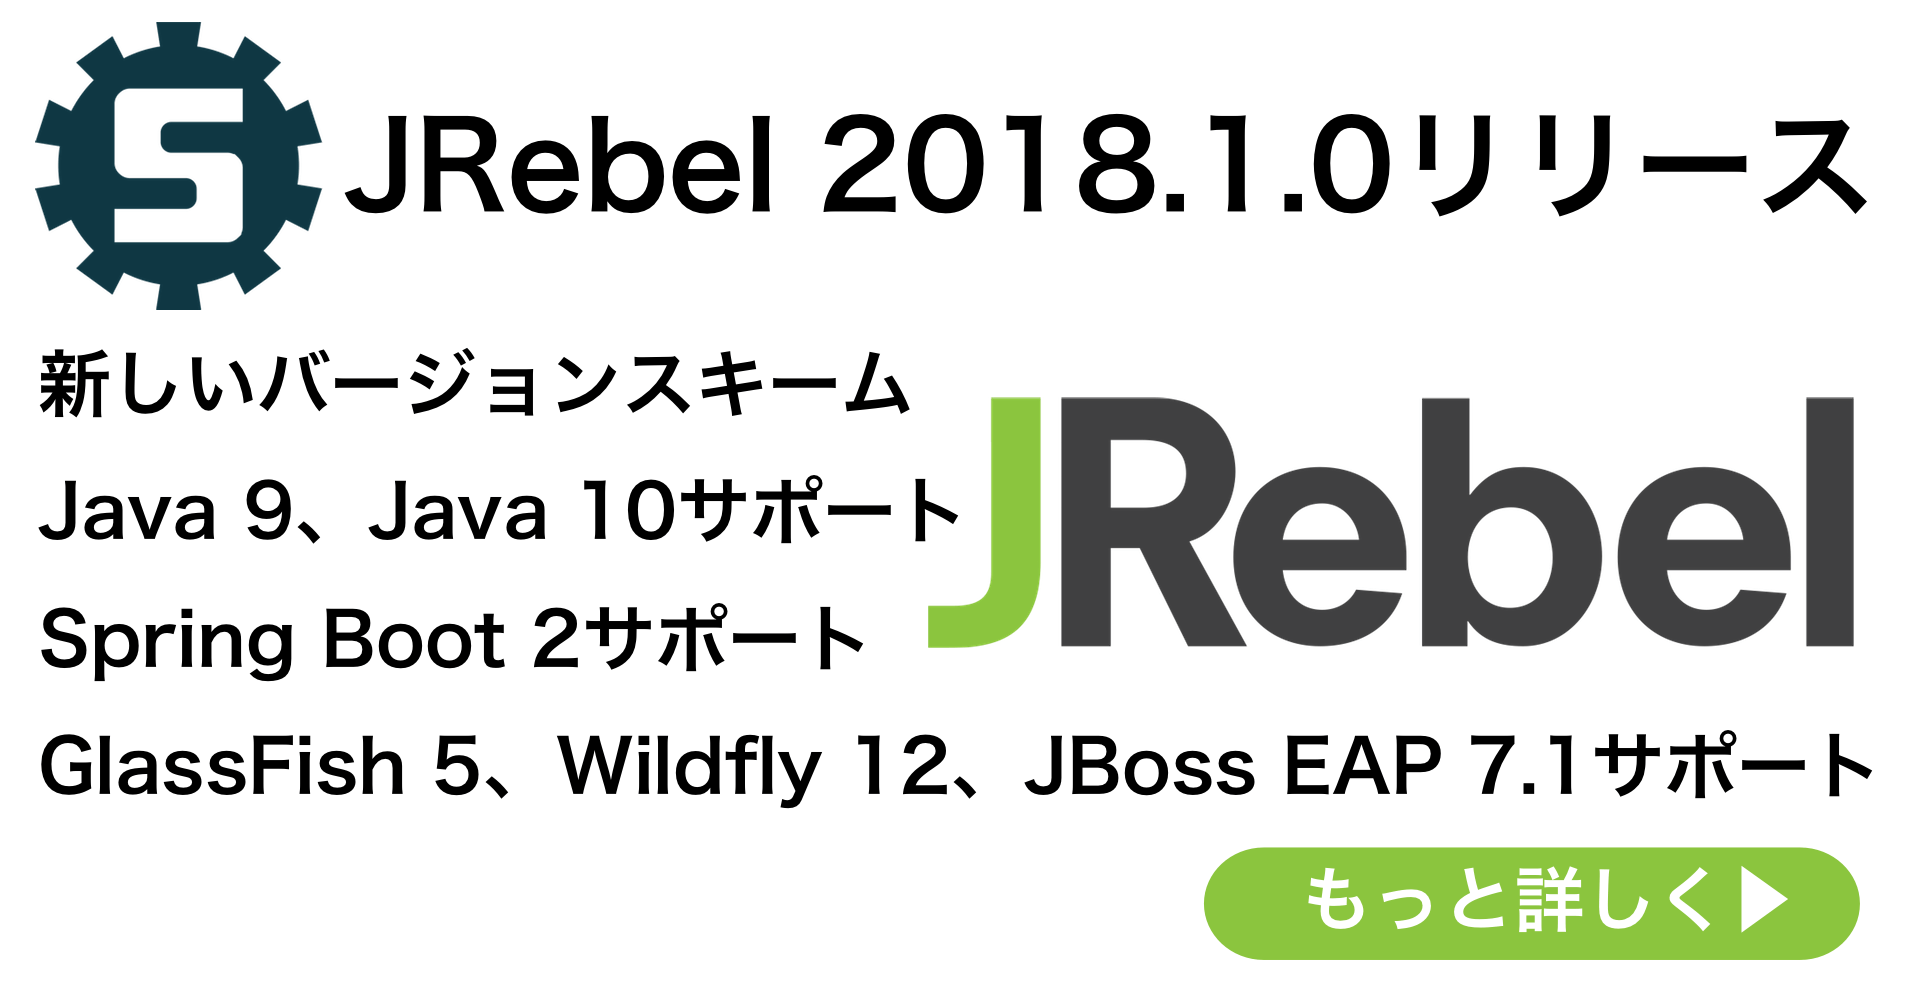 JRebel 2018.1.0リリース